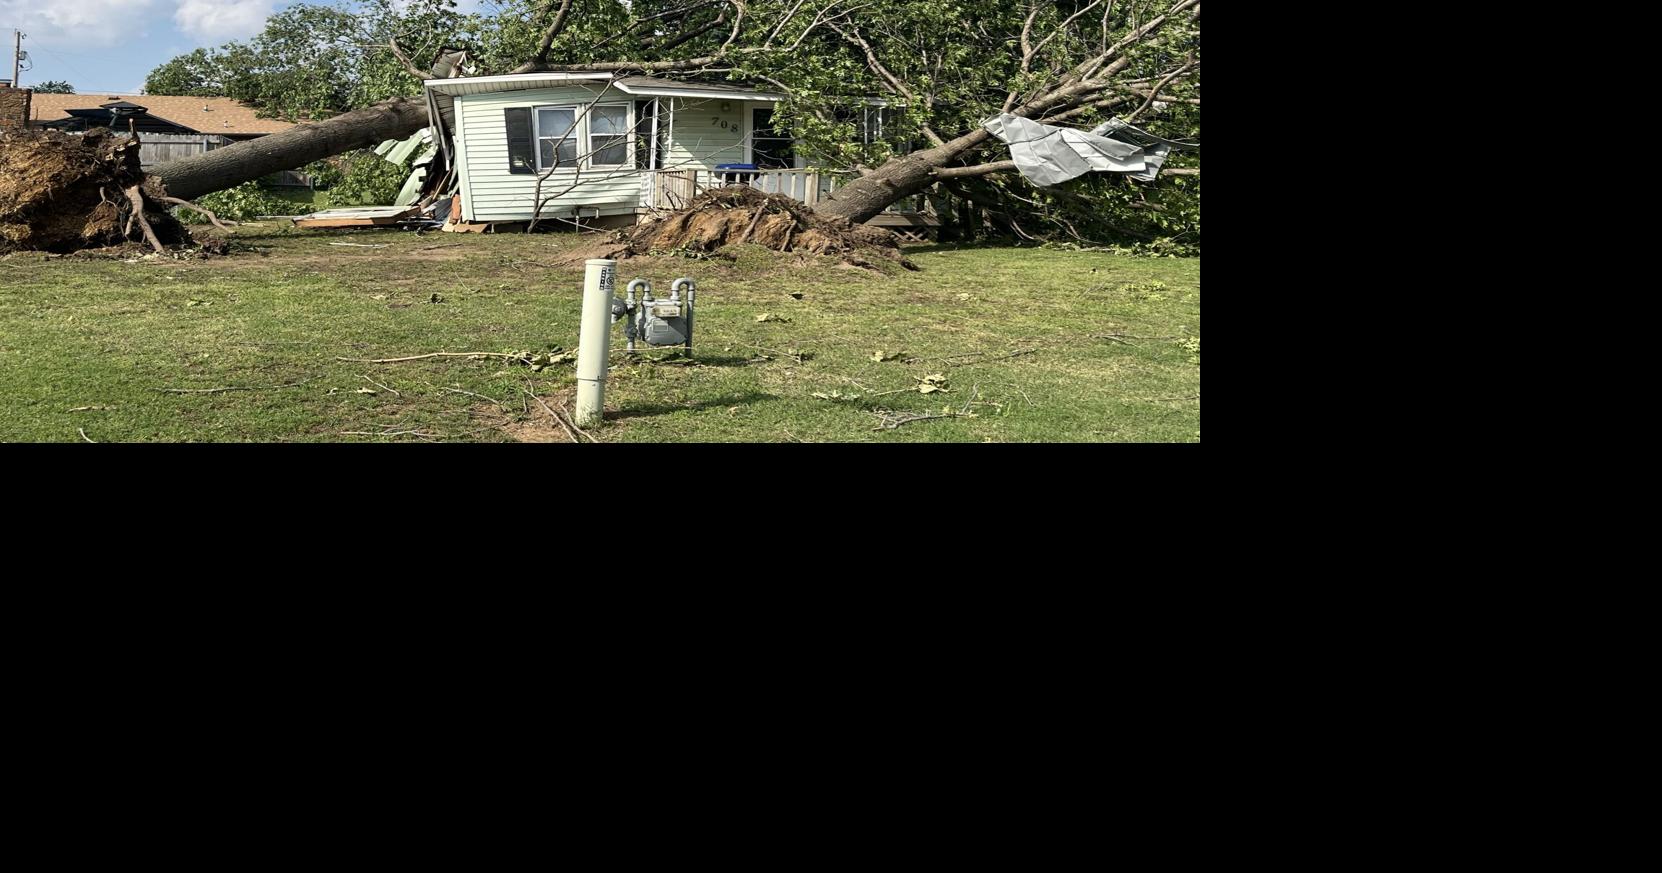 Mises à jour : dégâts causés par une tornade à Claremore |  Nouvelles